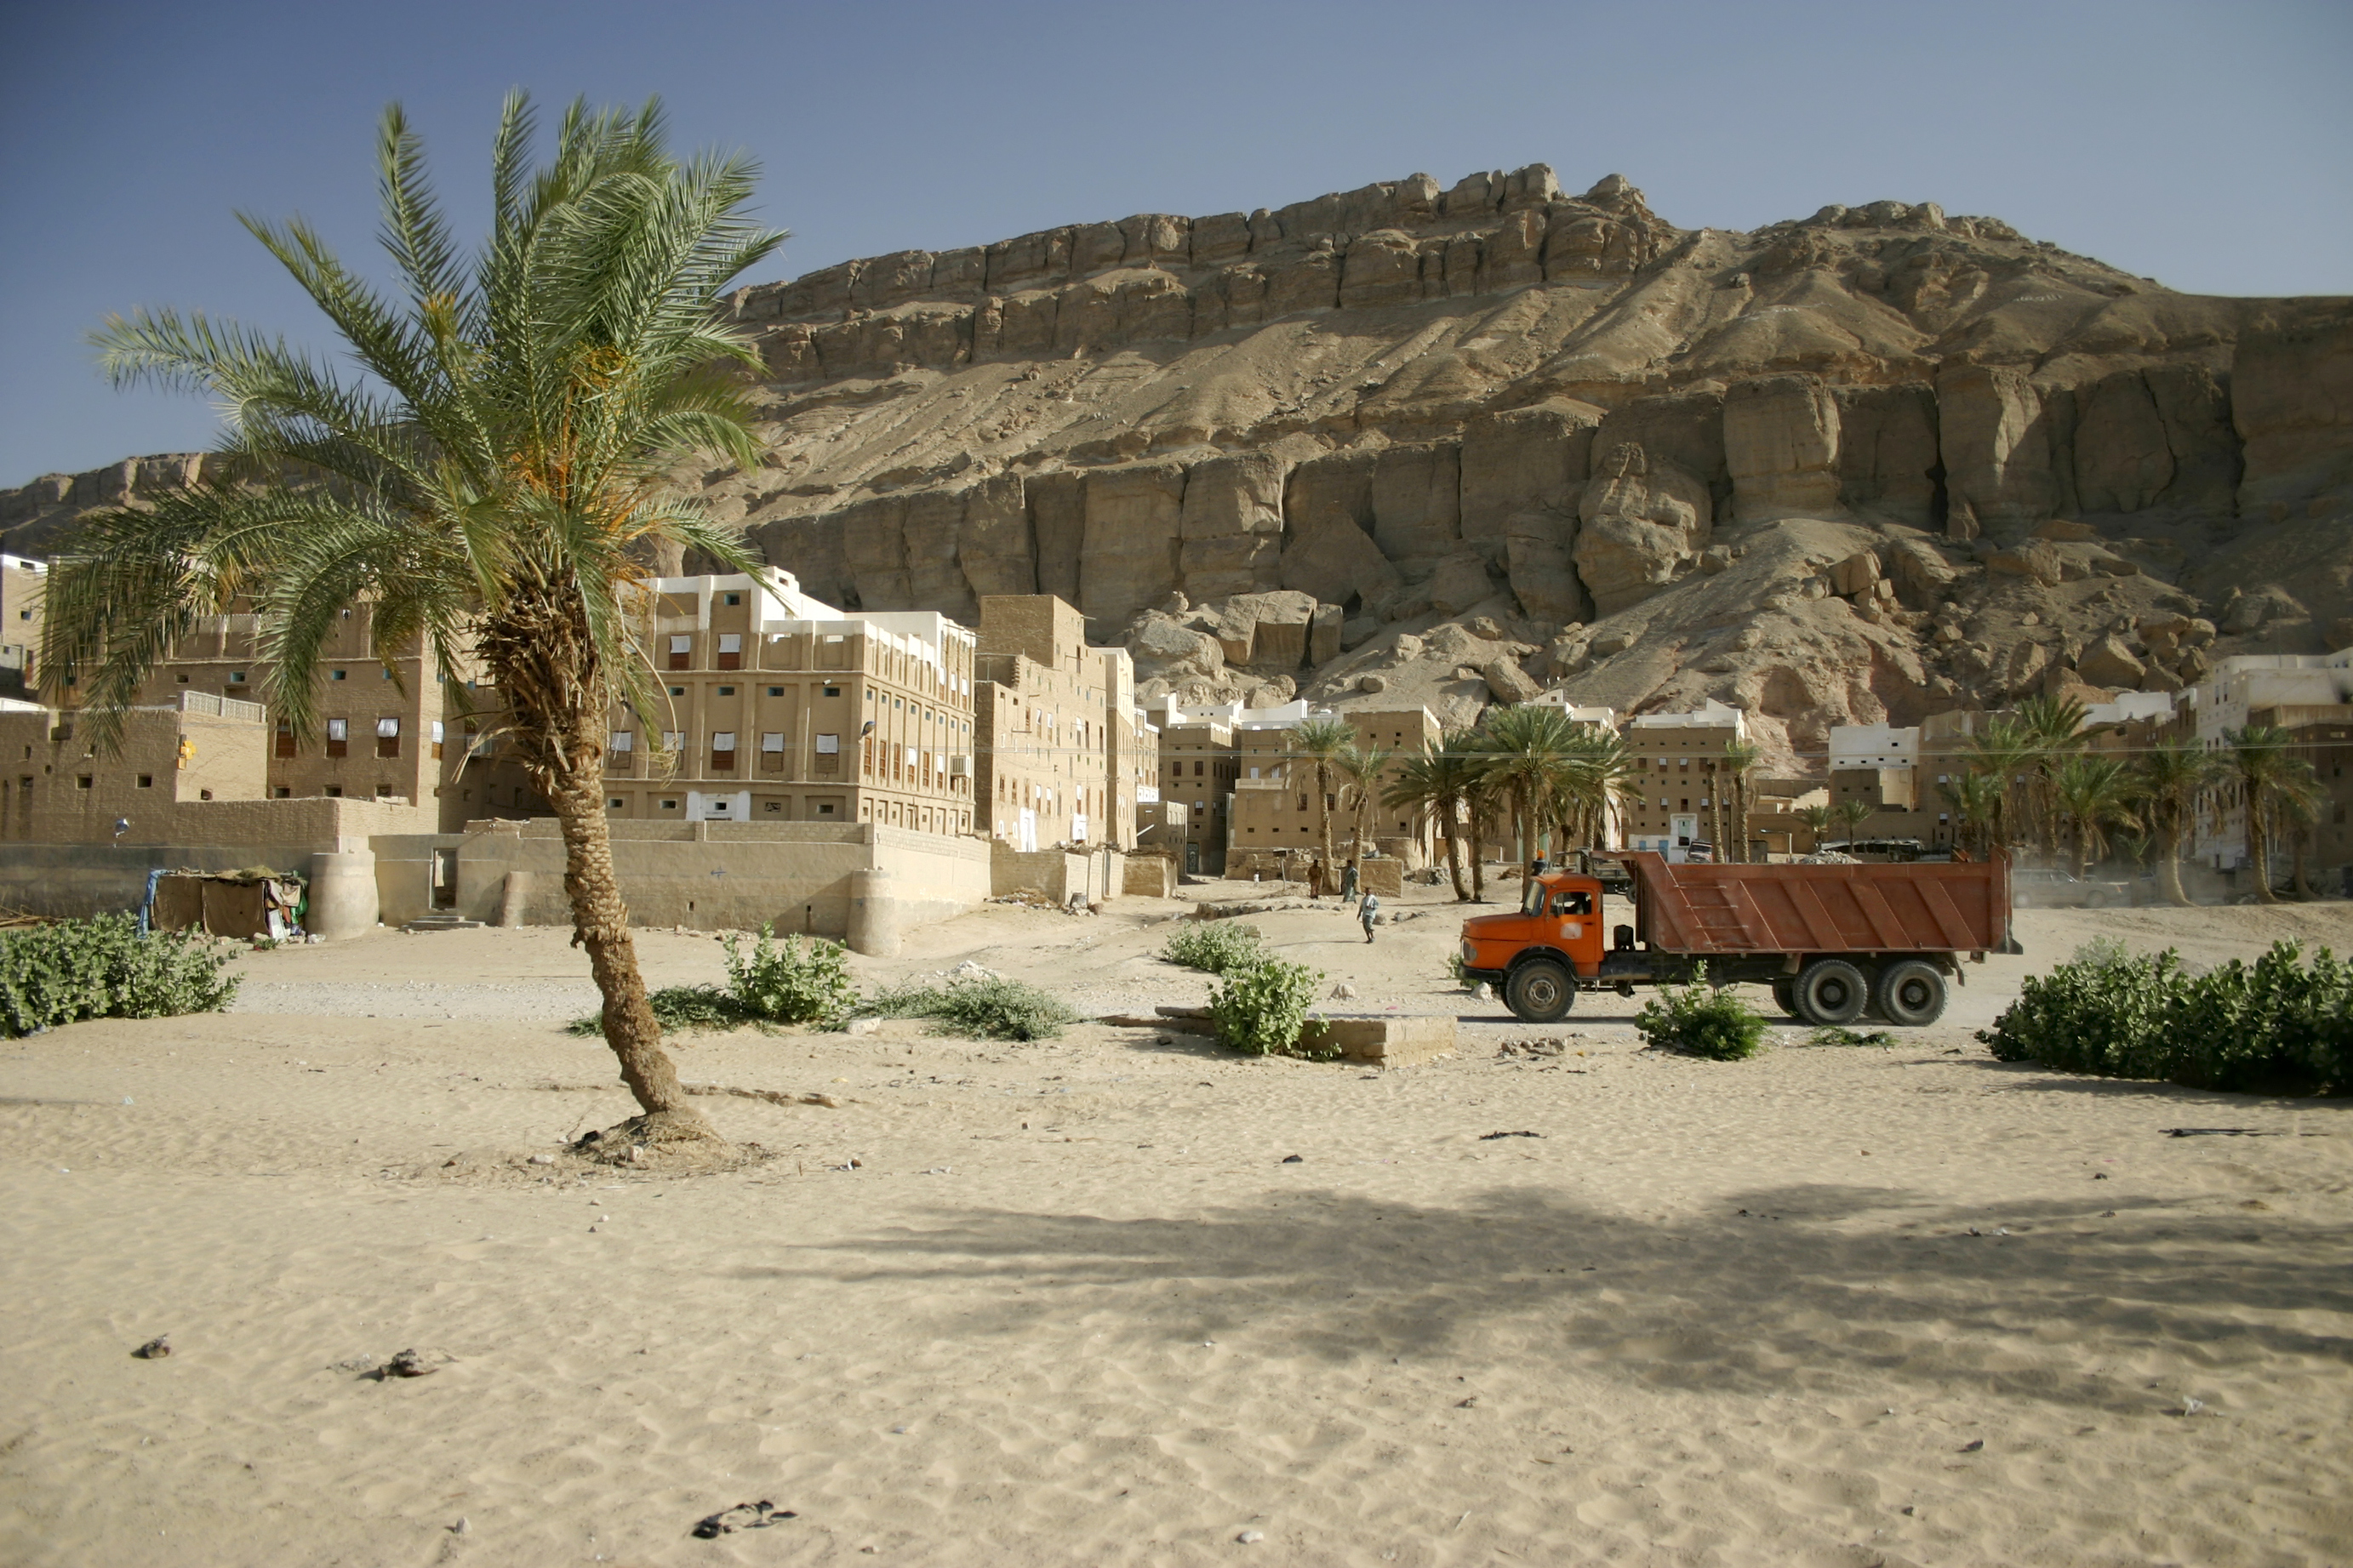 Desert village, Yemen